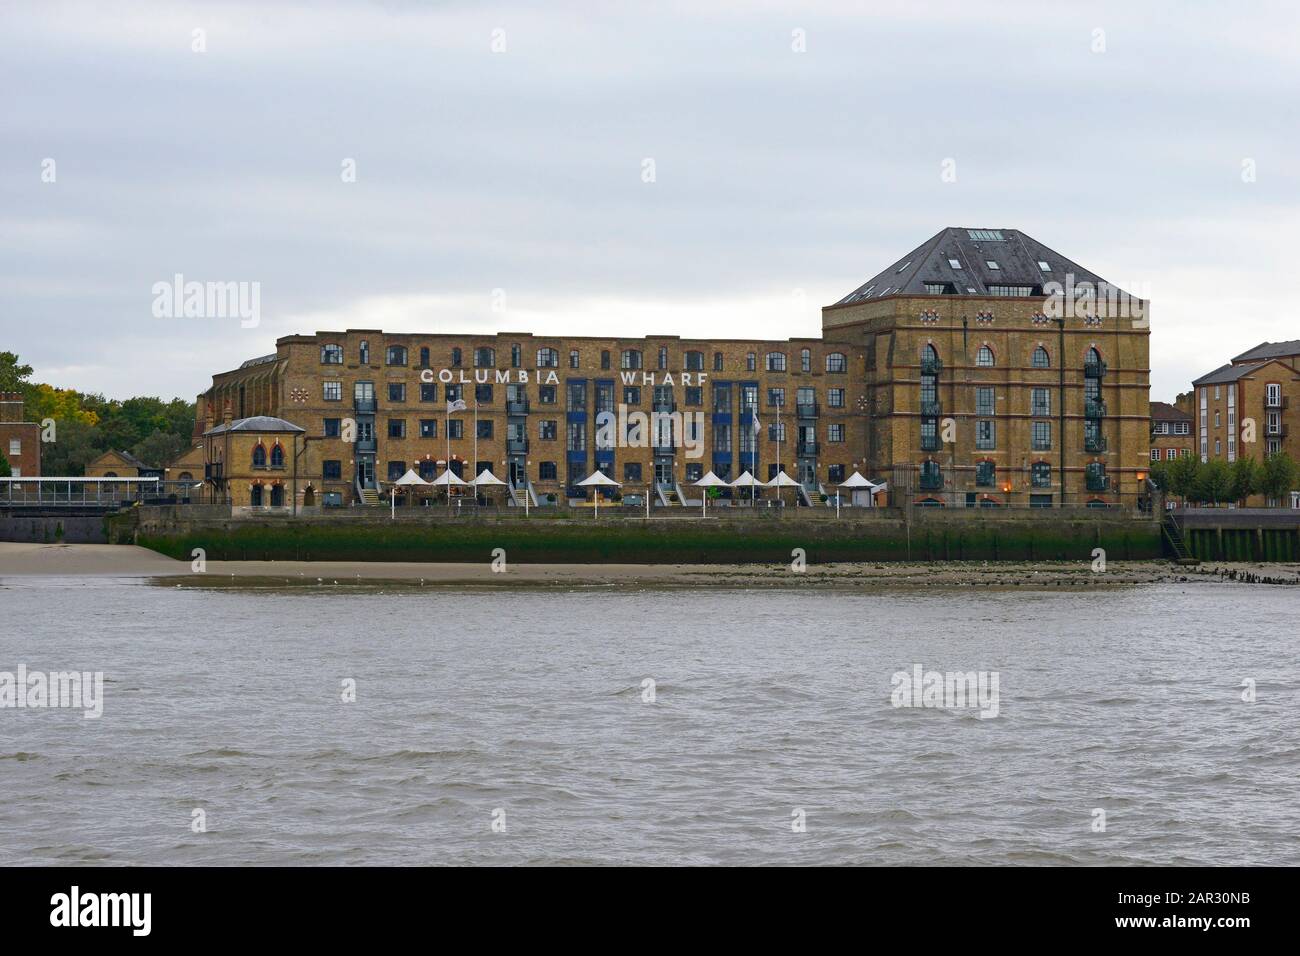 Blick auf die Gebäude von Nelson Dock gegenüber Canary Wharf am südlichen Ufer der Themse, London, Großbritannien Stockfoto